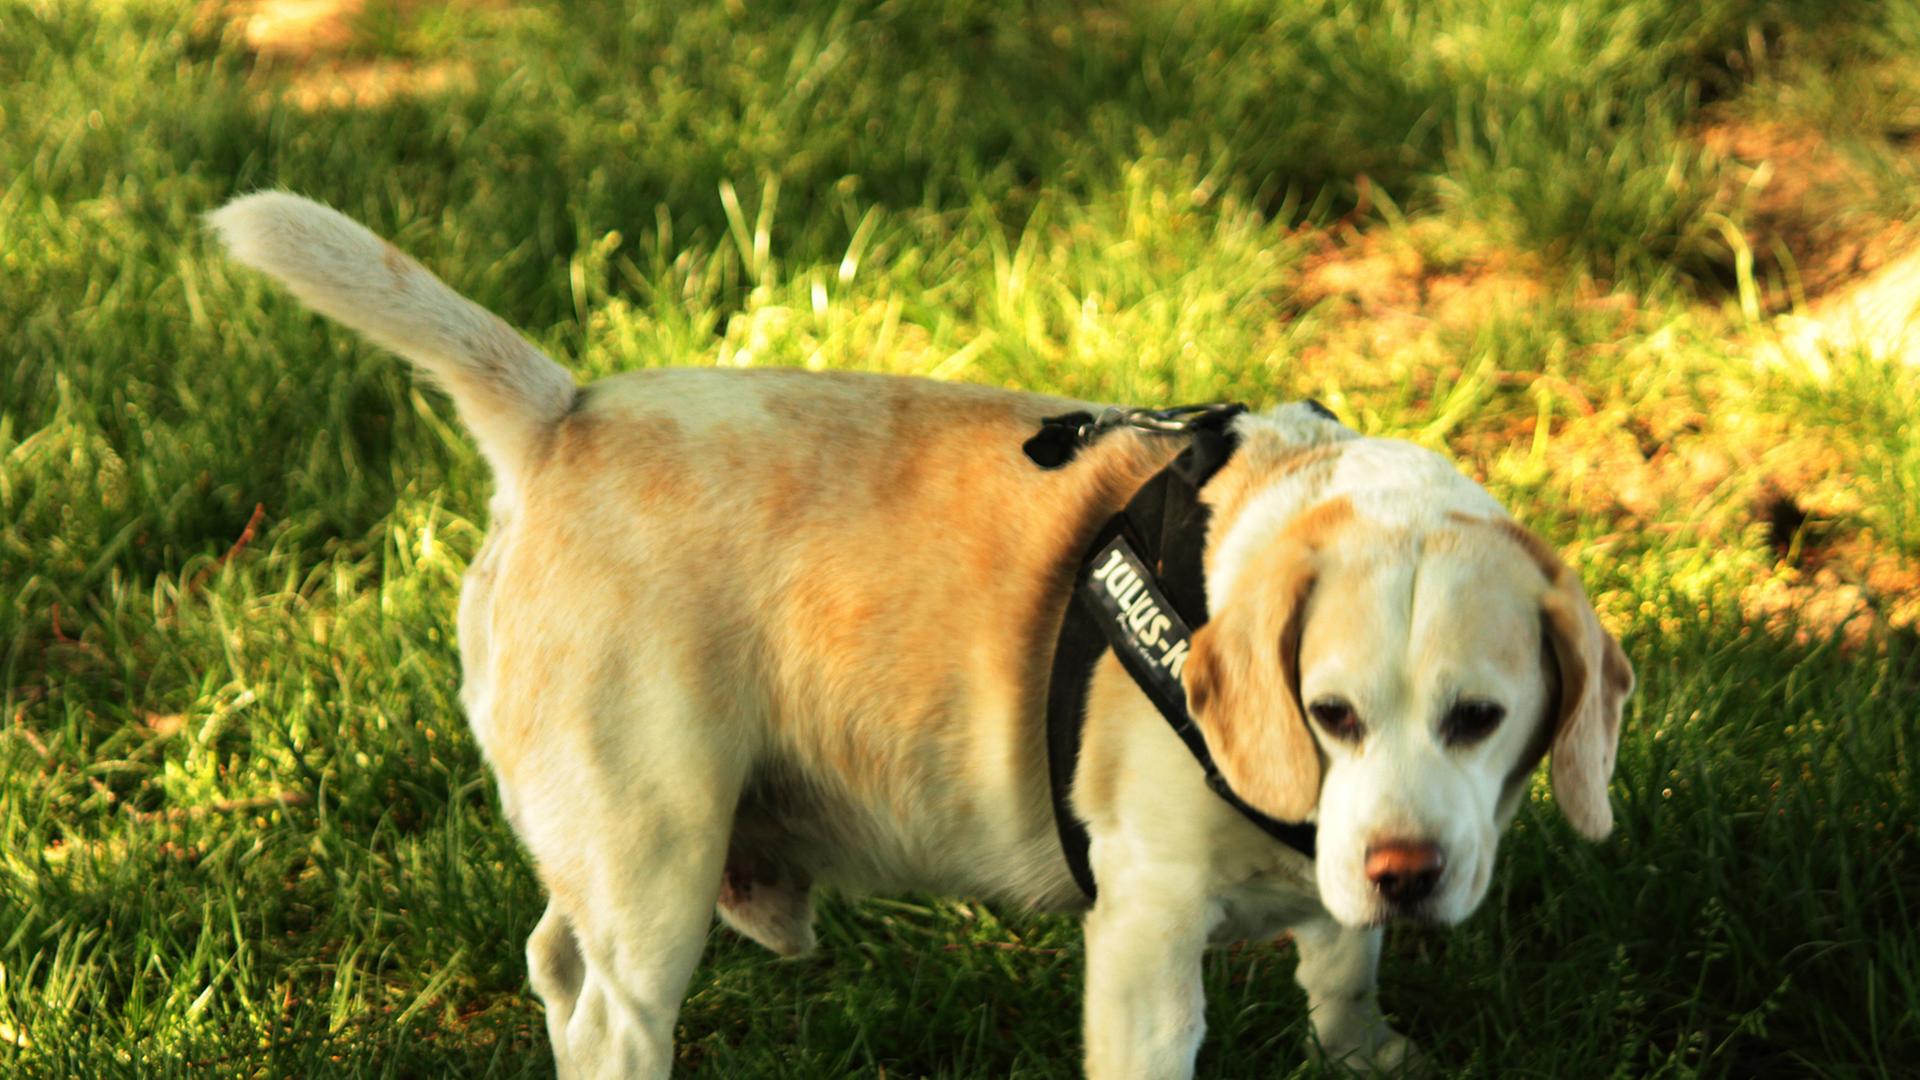 Ein Beagle-Hund